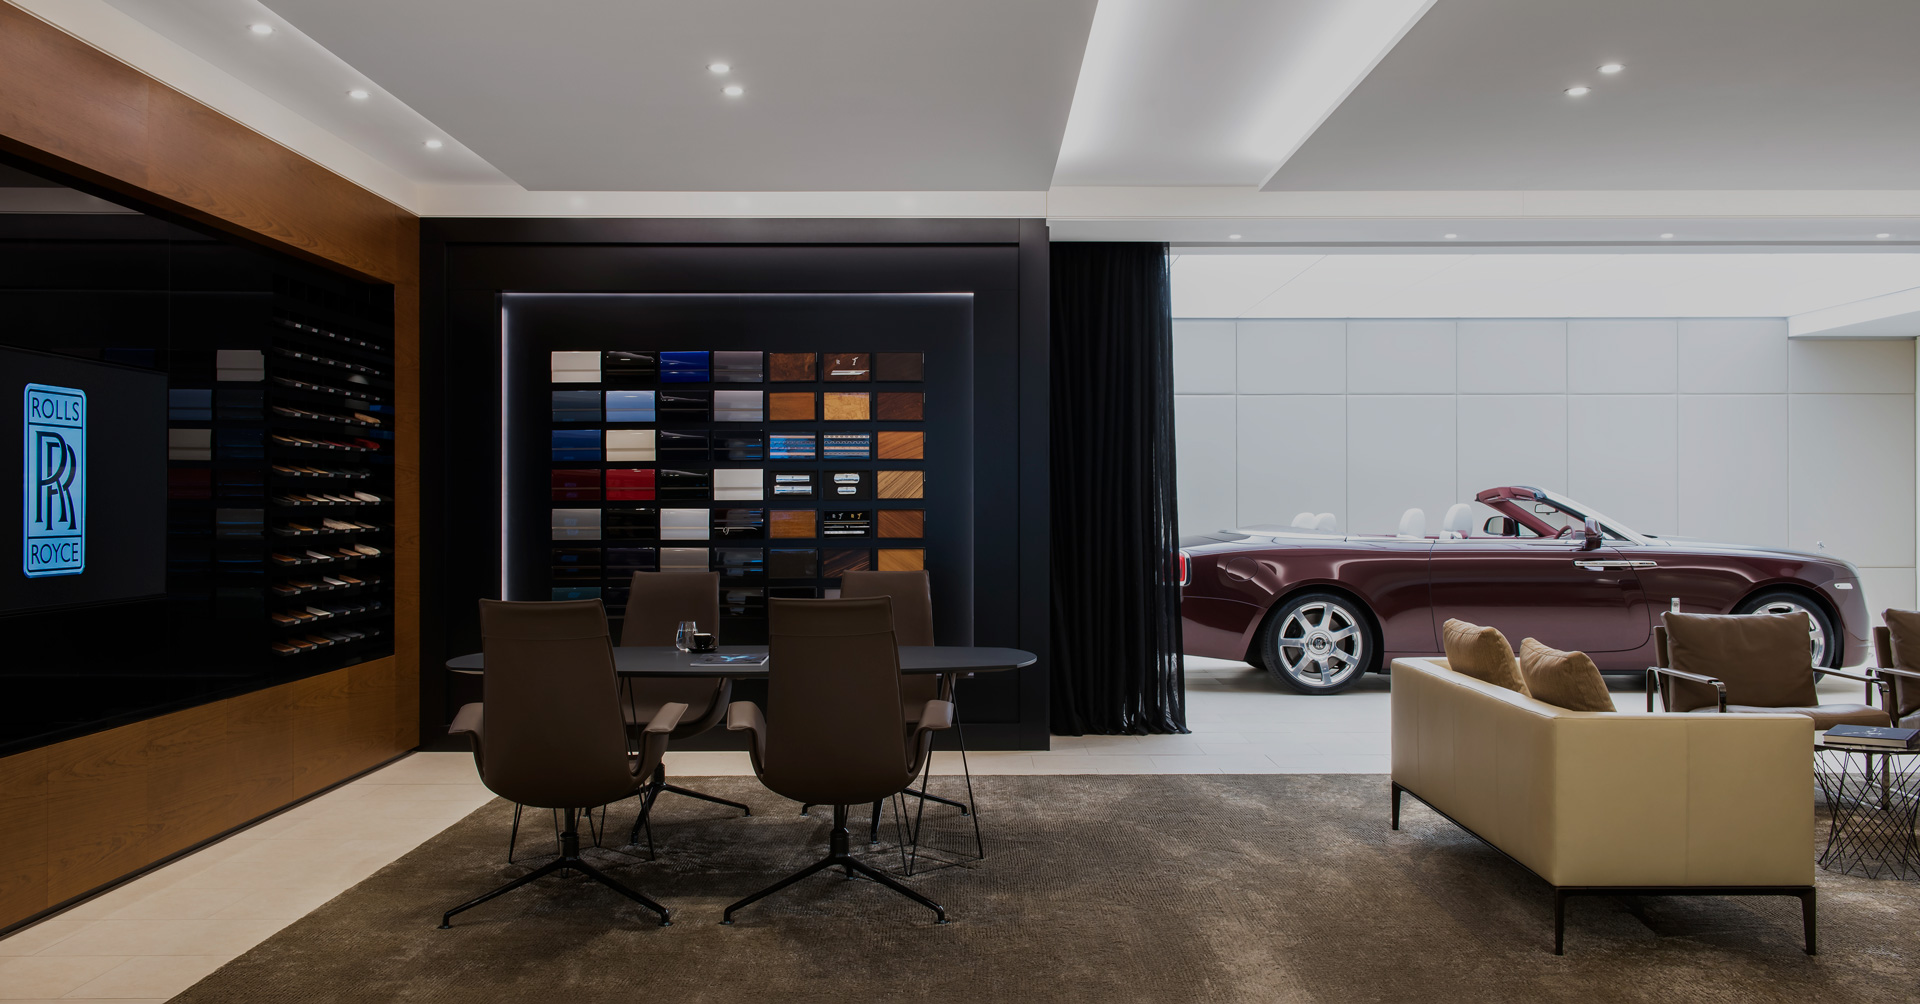 Rolls-Royce Melbourne Showroom